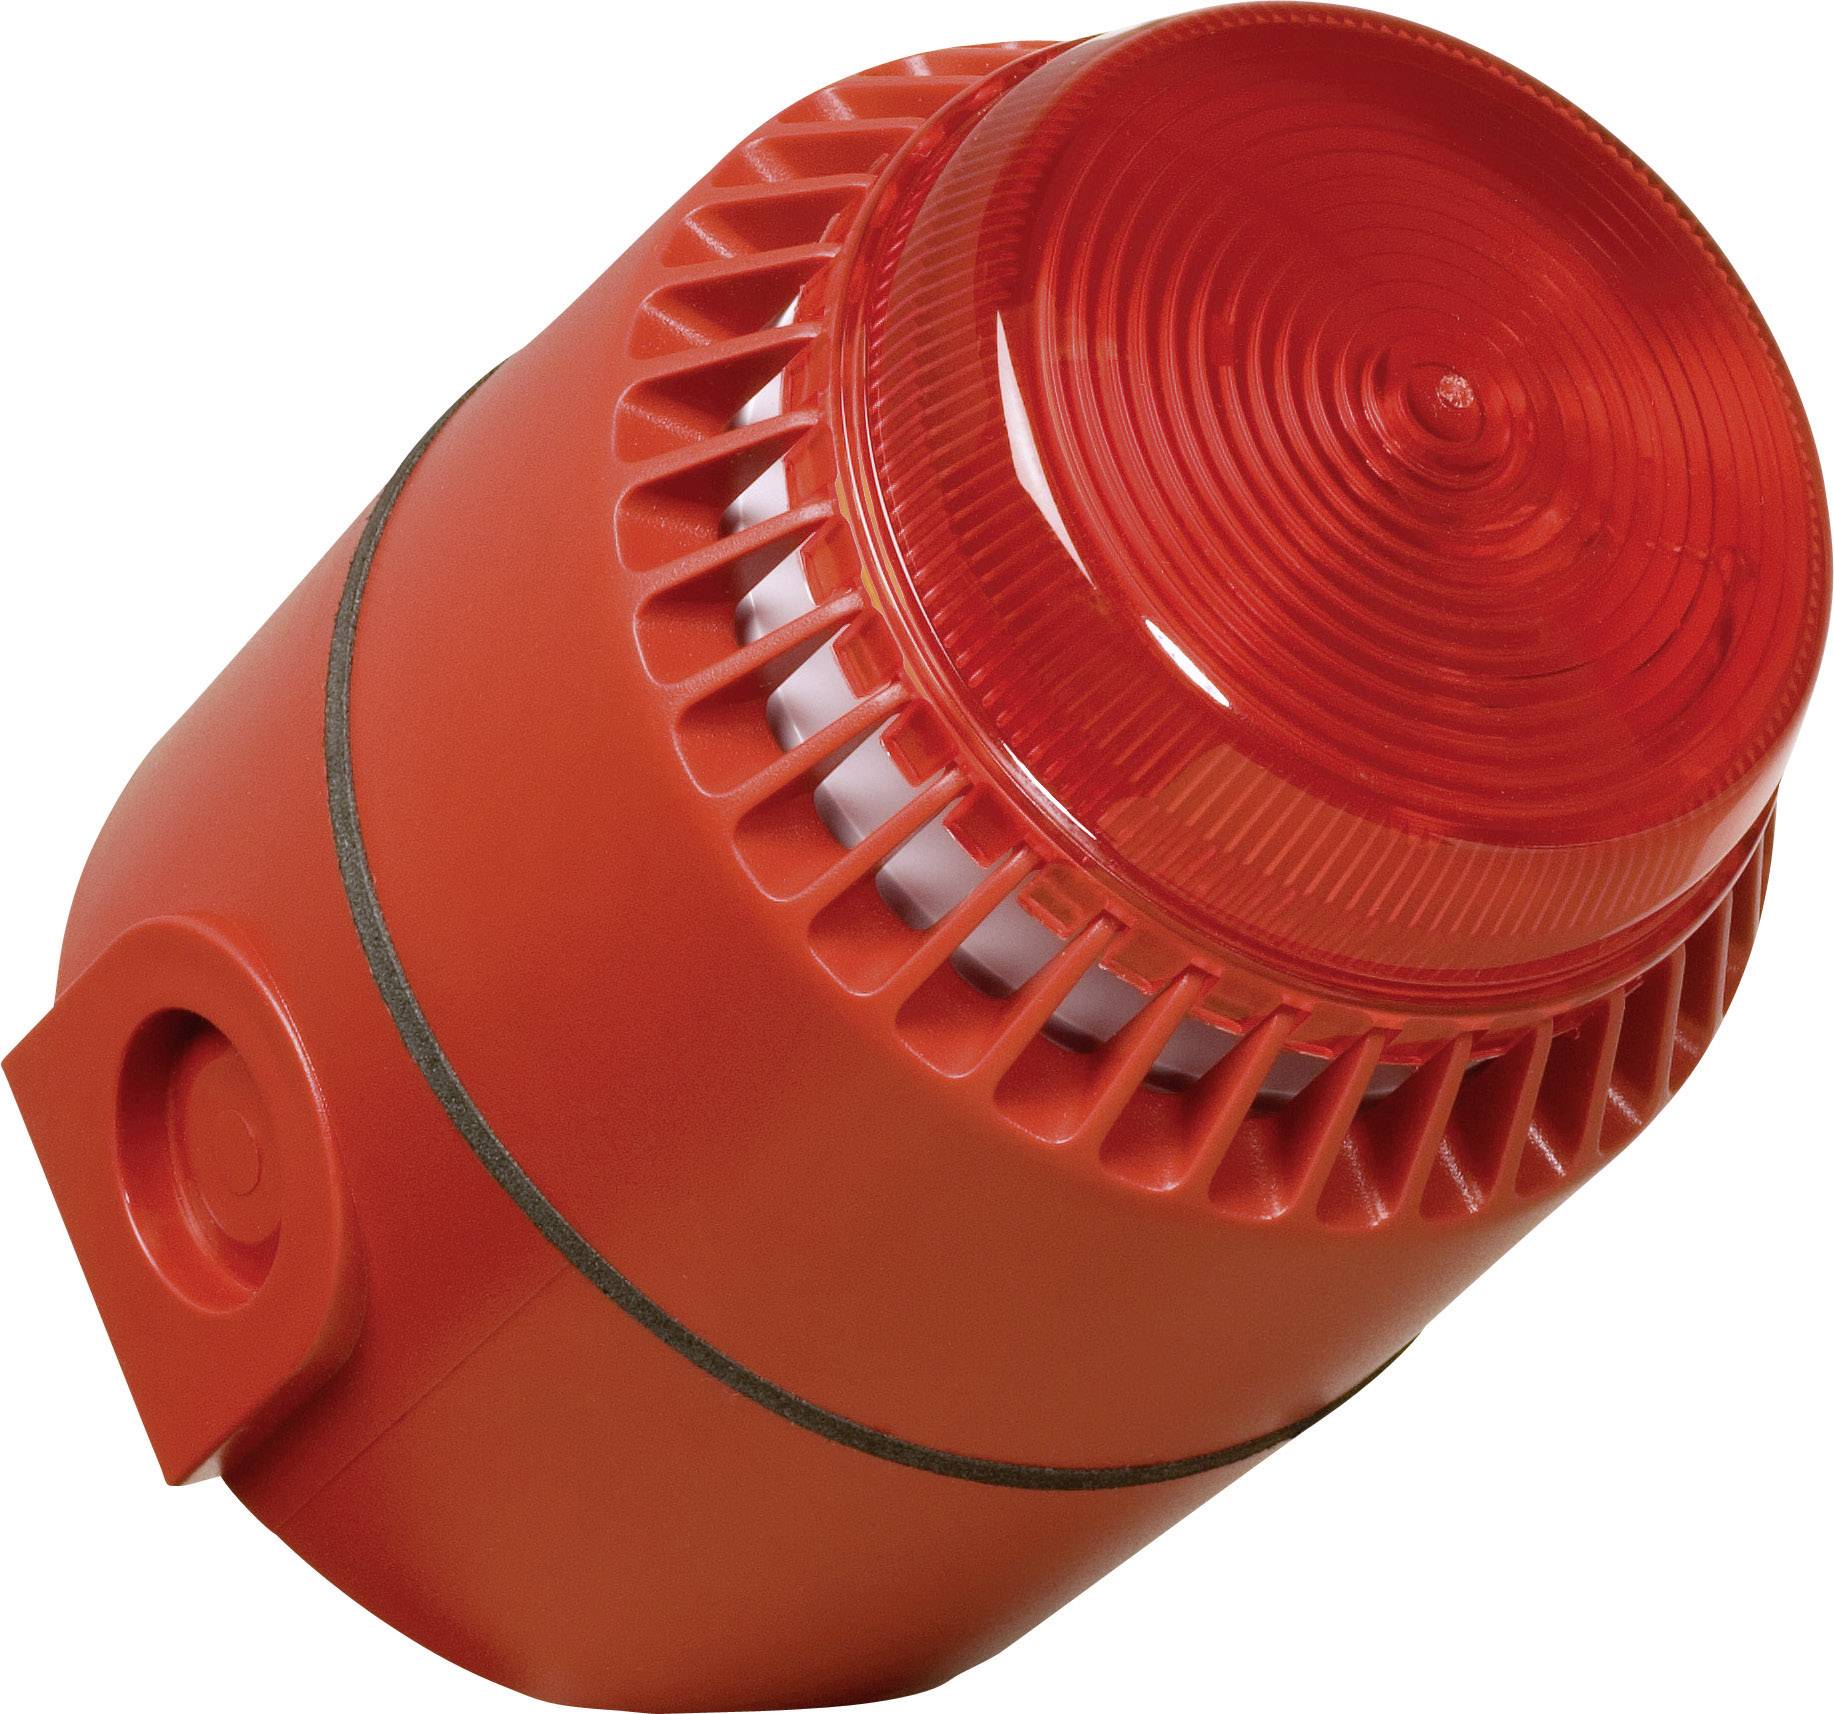 COMPRO Kombi-Signalgeber ComPro Flashni Rot Blitzlicht, Dauerton 24 V/DC 110 dB